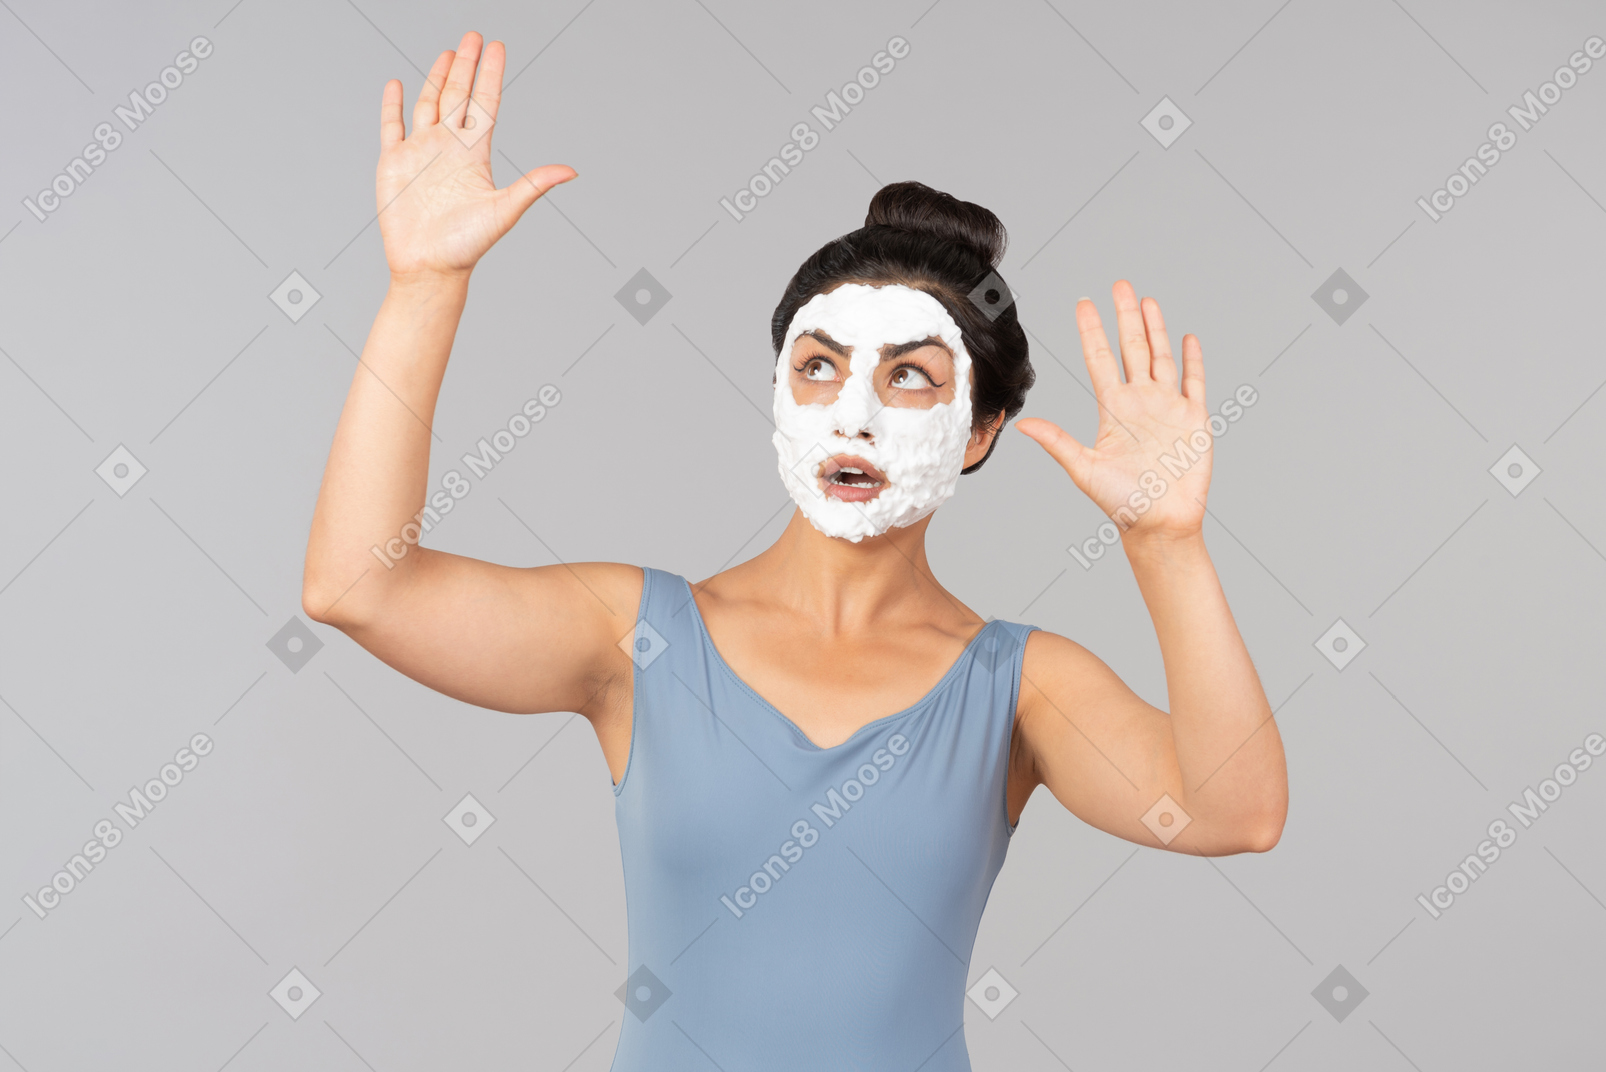 Femme avec masque blanc sur l'envoi de baisers